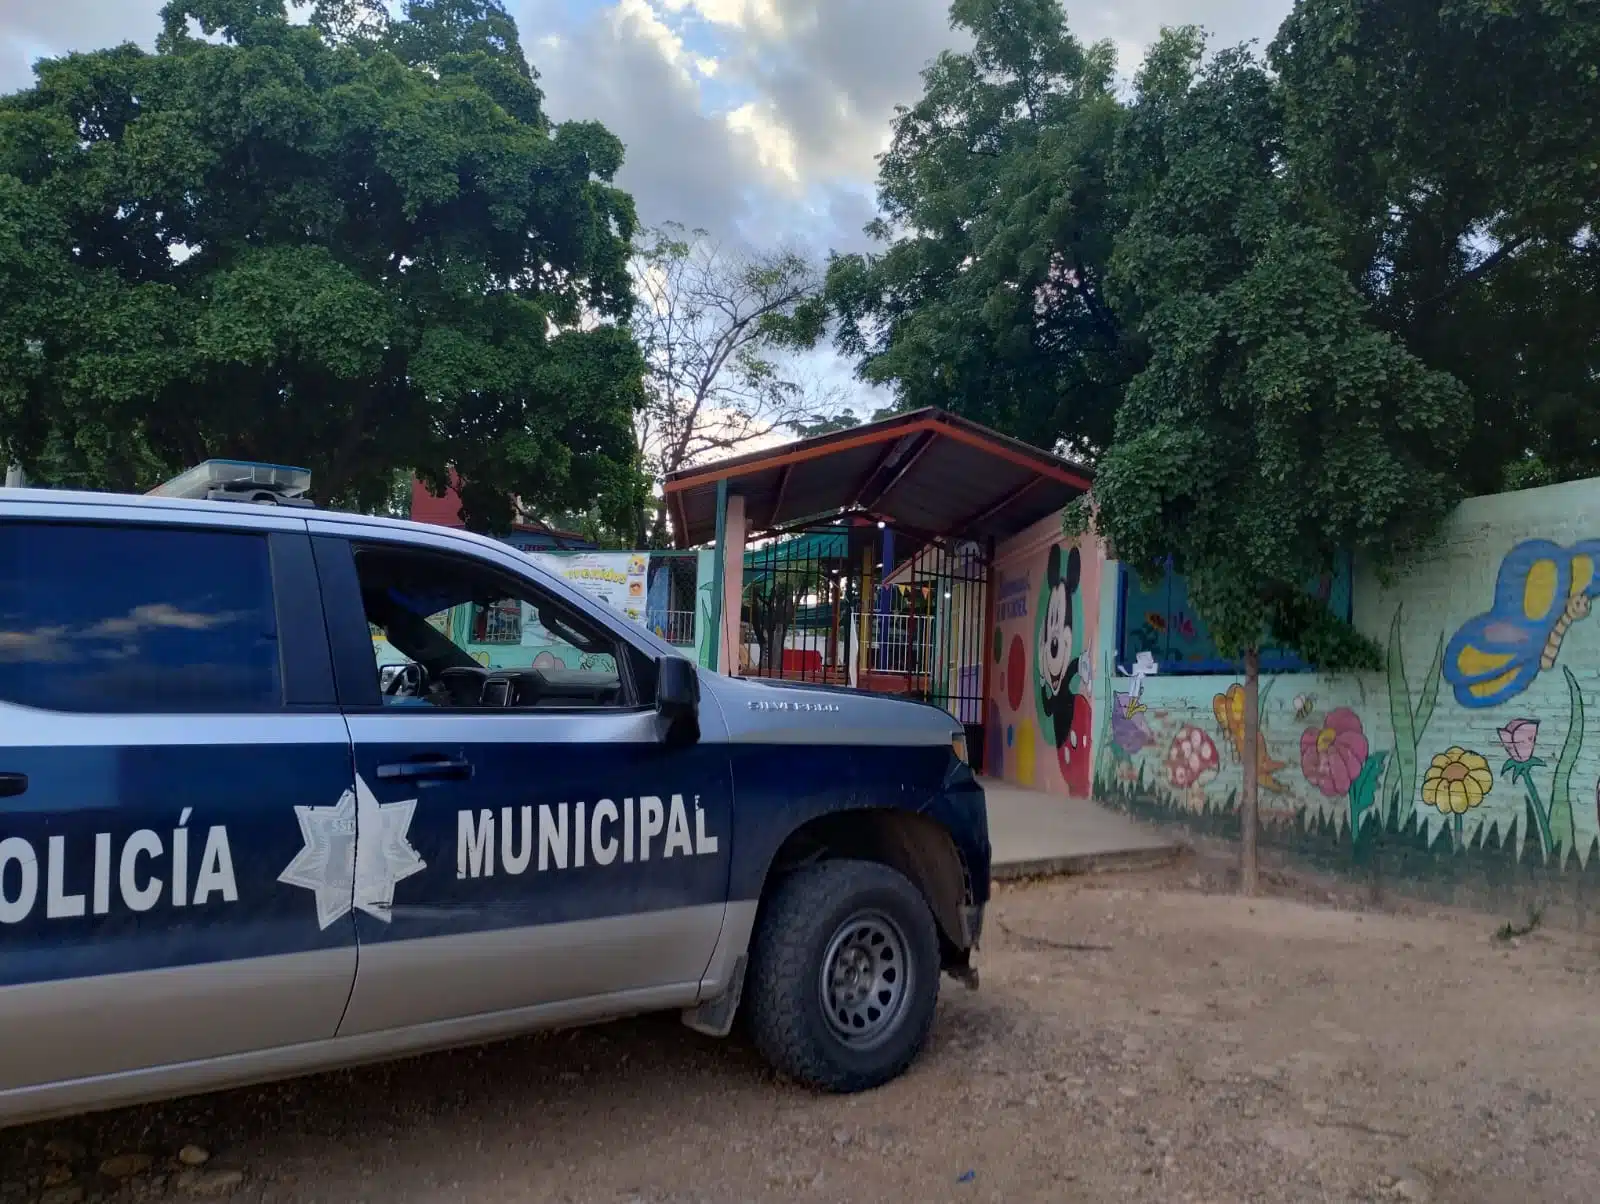 Patrulla de la policía Municipal de Culiacán afuera de un kínder